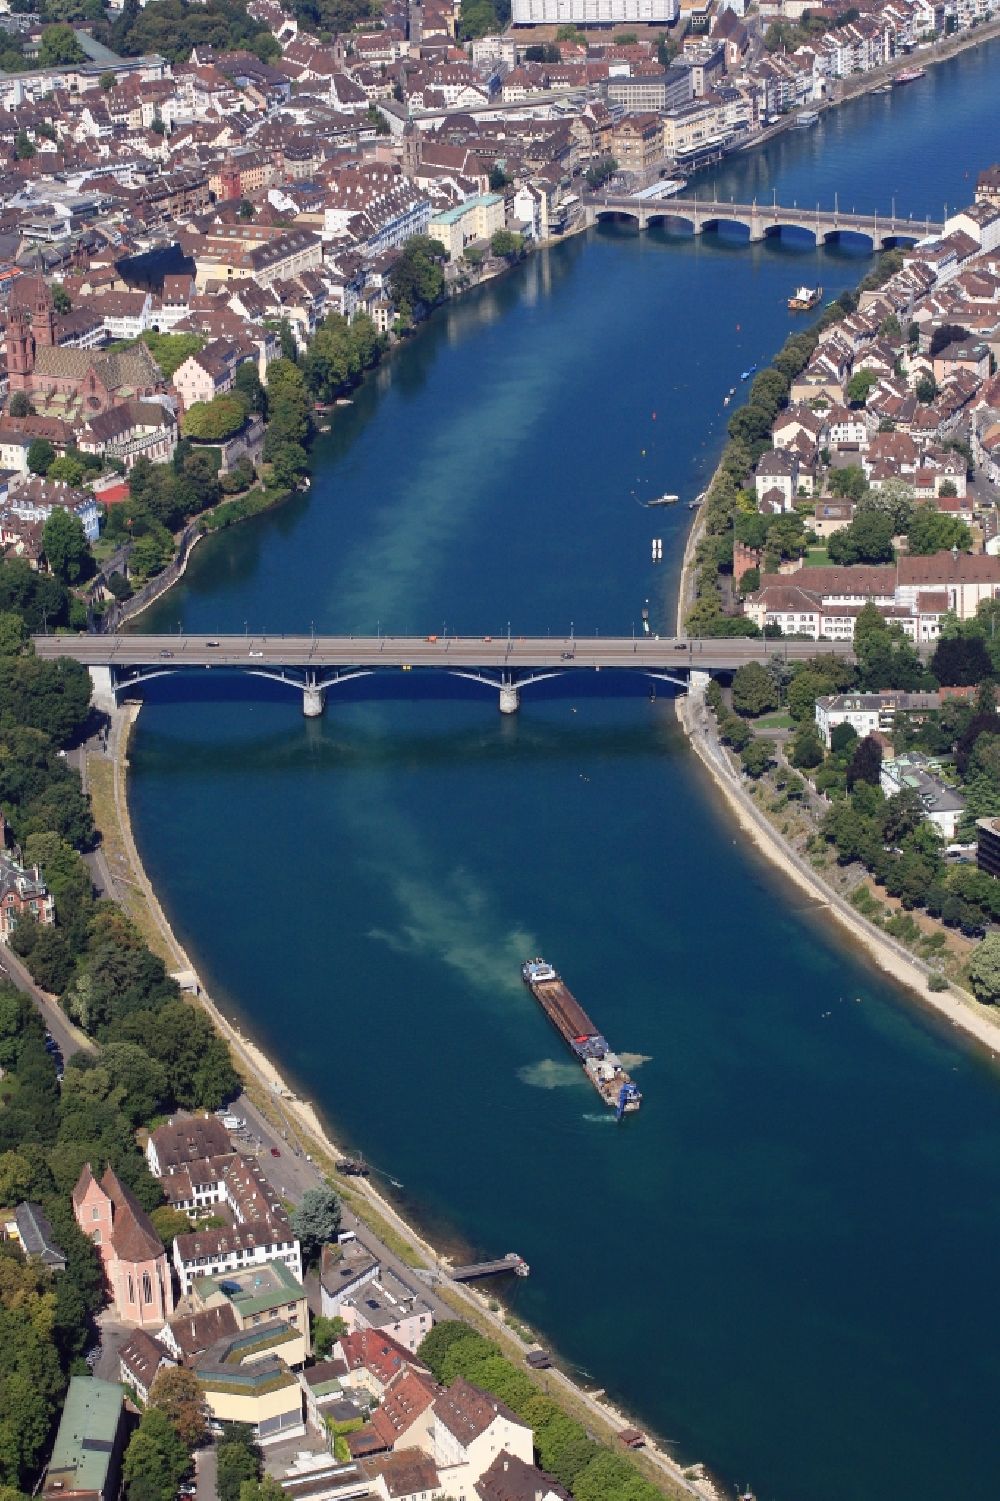 Luftbild Basel - Ausbaggerungsarbeiten im Rhein bei Niedrigwasser zur Tieferlegung der Fahrrinne am Rheinknie in Basel, Schweiz